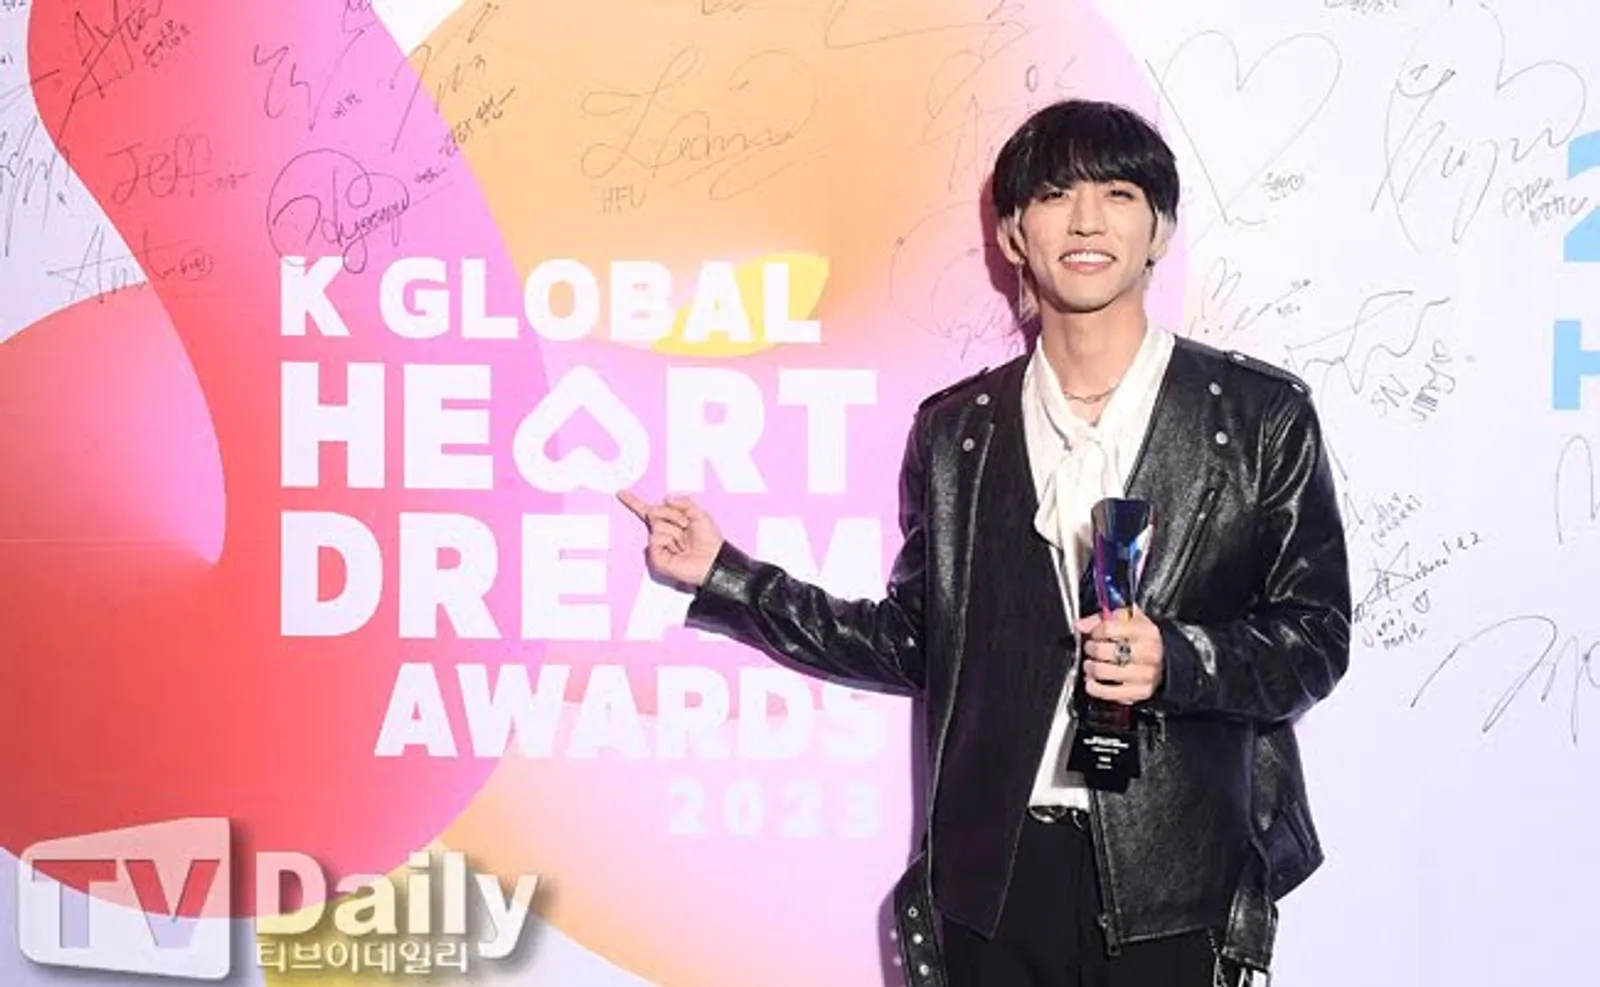 Daftar Pemenang K Global Heart Dream Awards, Stray Kids Raih Daesang!